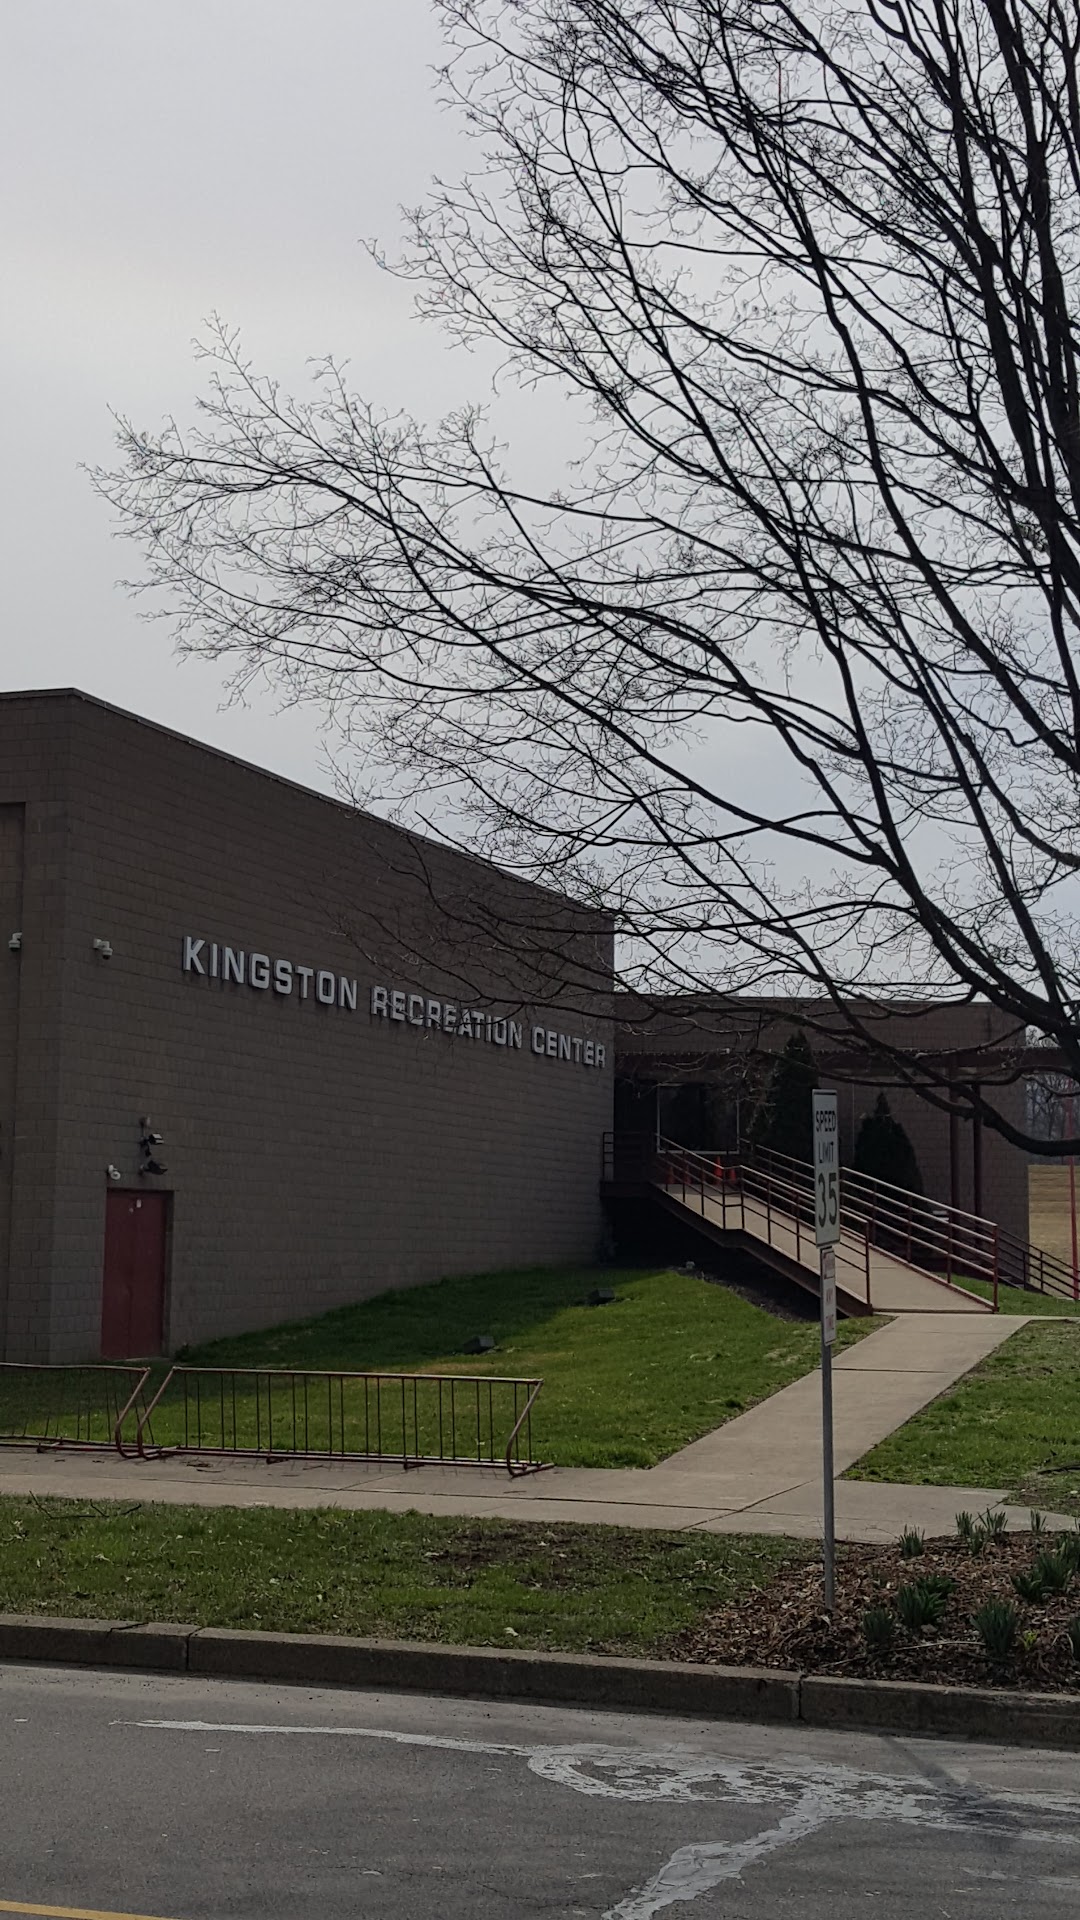 Kingston Recreation Center